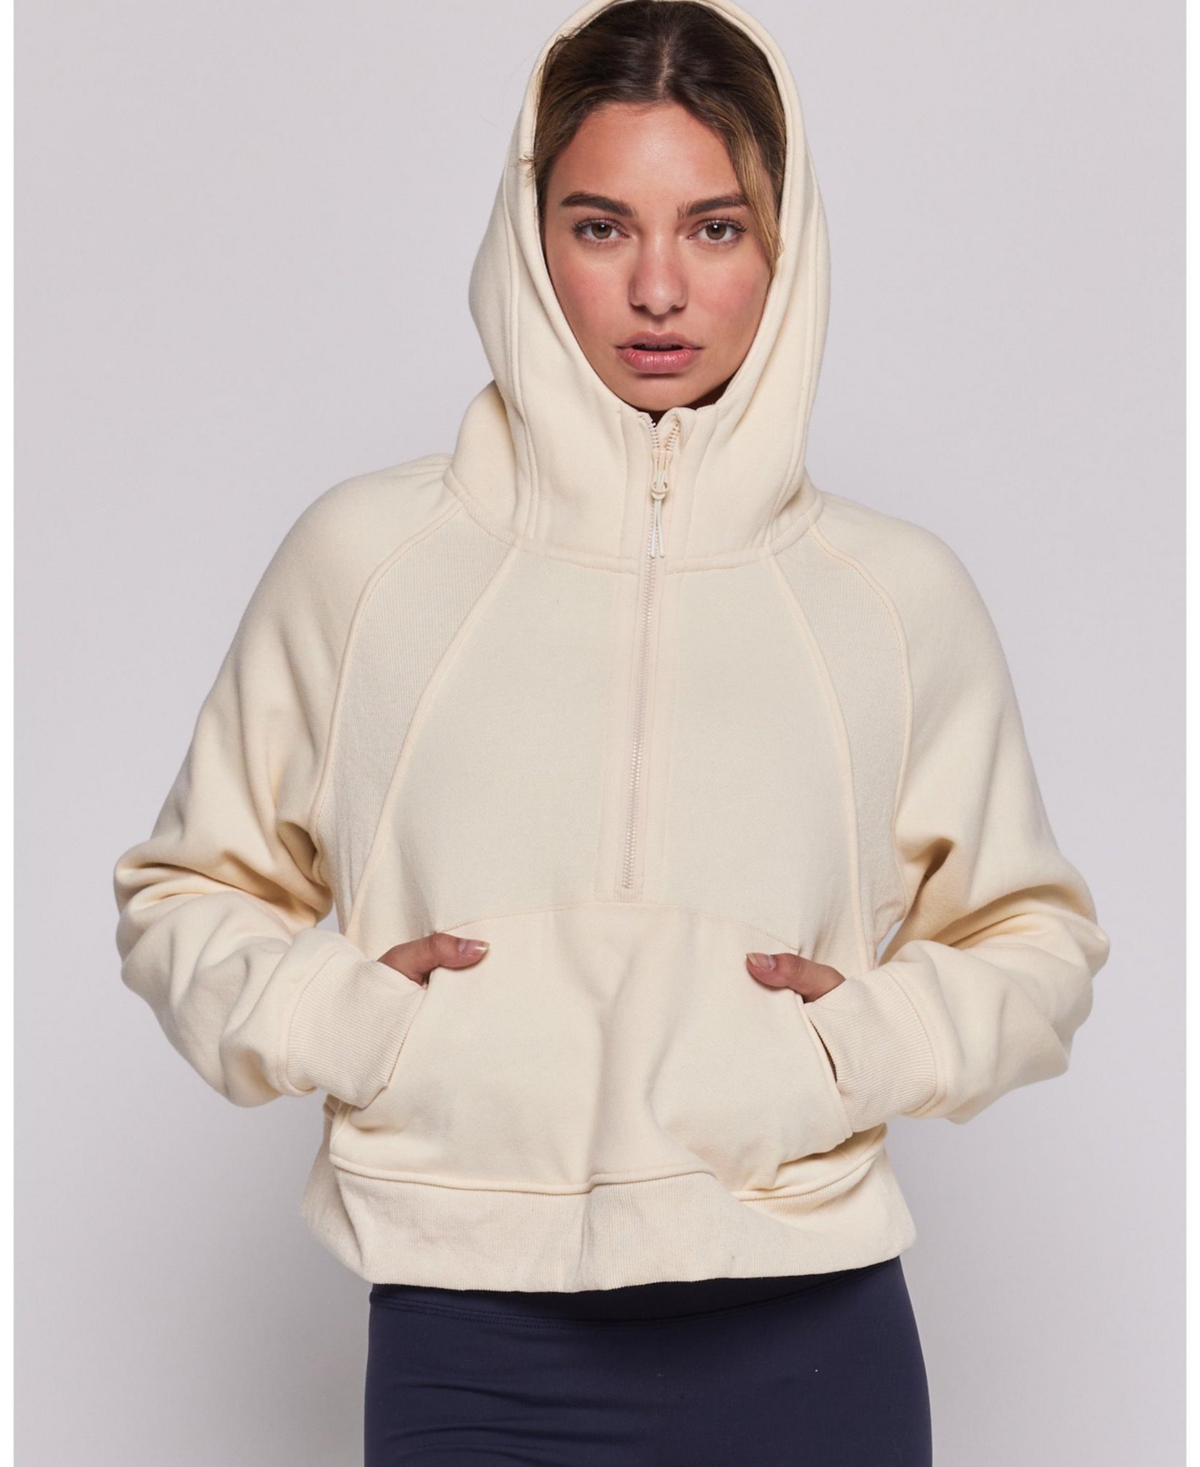 Effortless Fleece Half Zip Hoodie For Women - Matcha